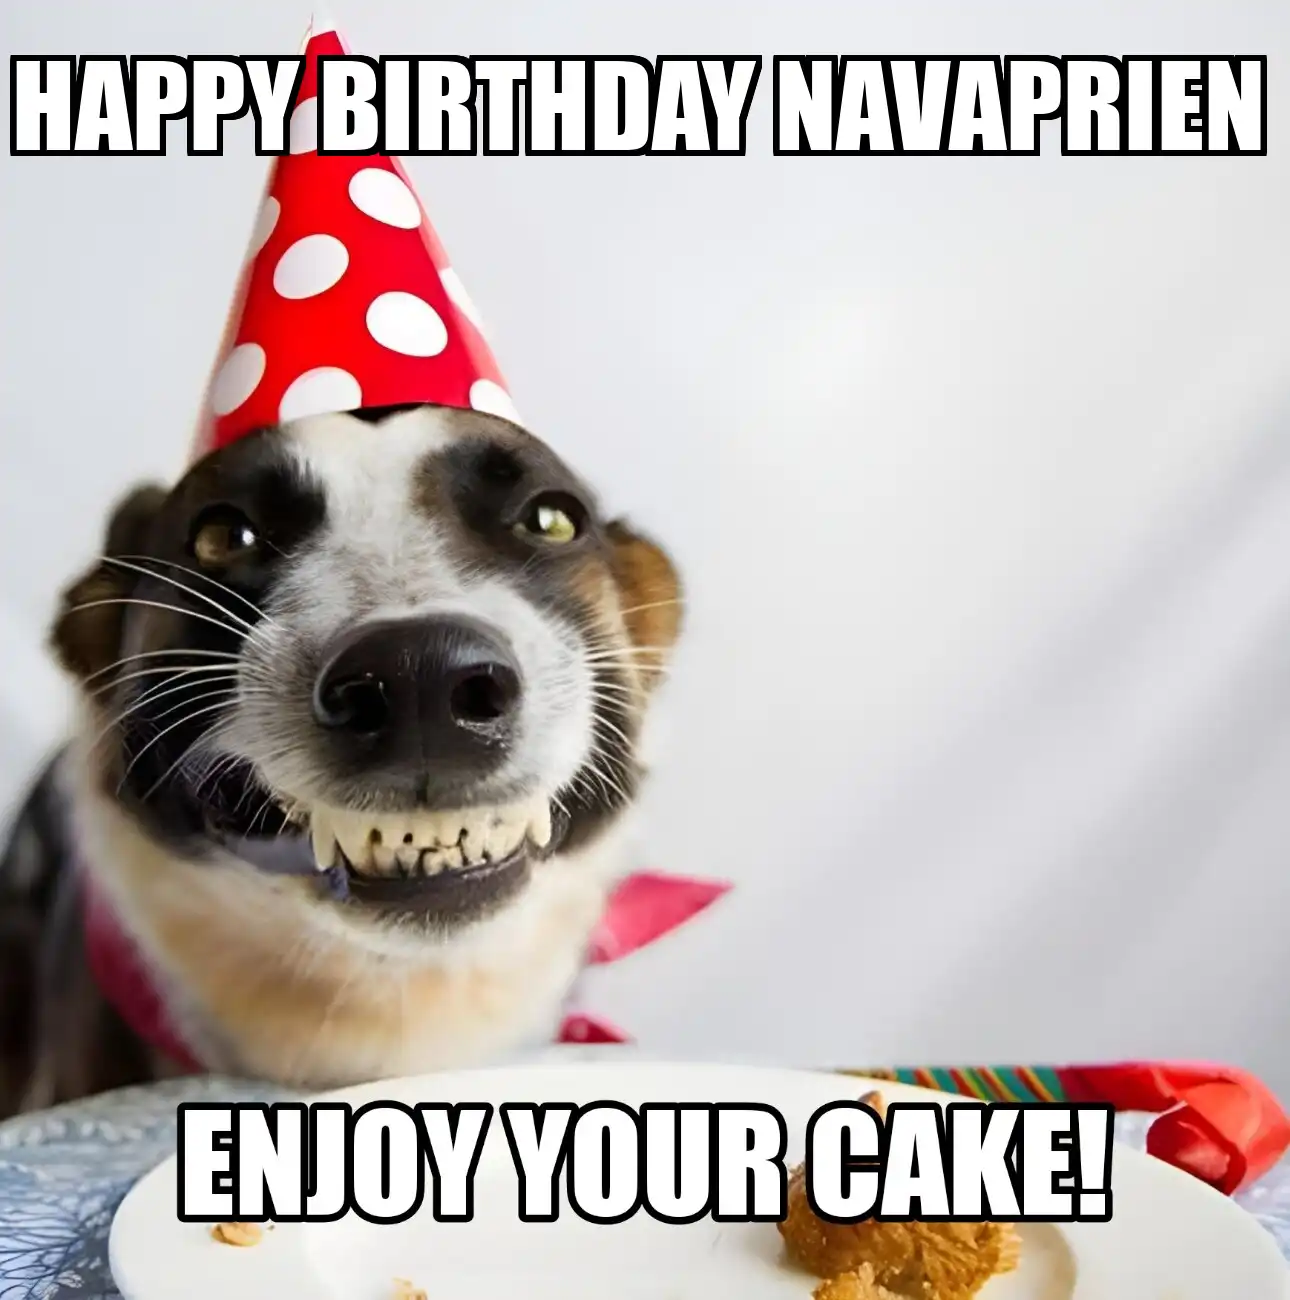 Happy Birthday Navaprien Enjoy Your Cake Dog Meme